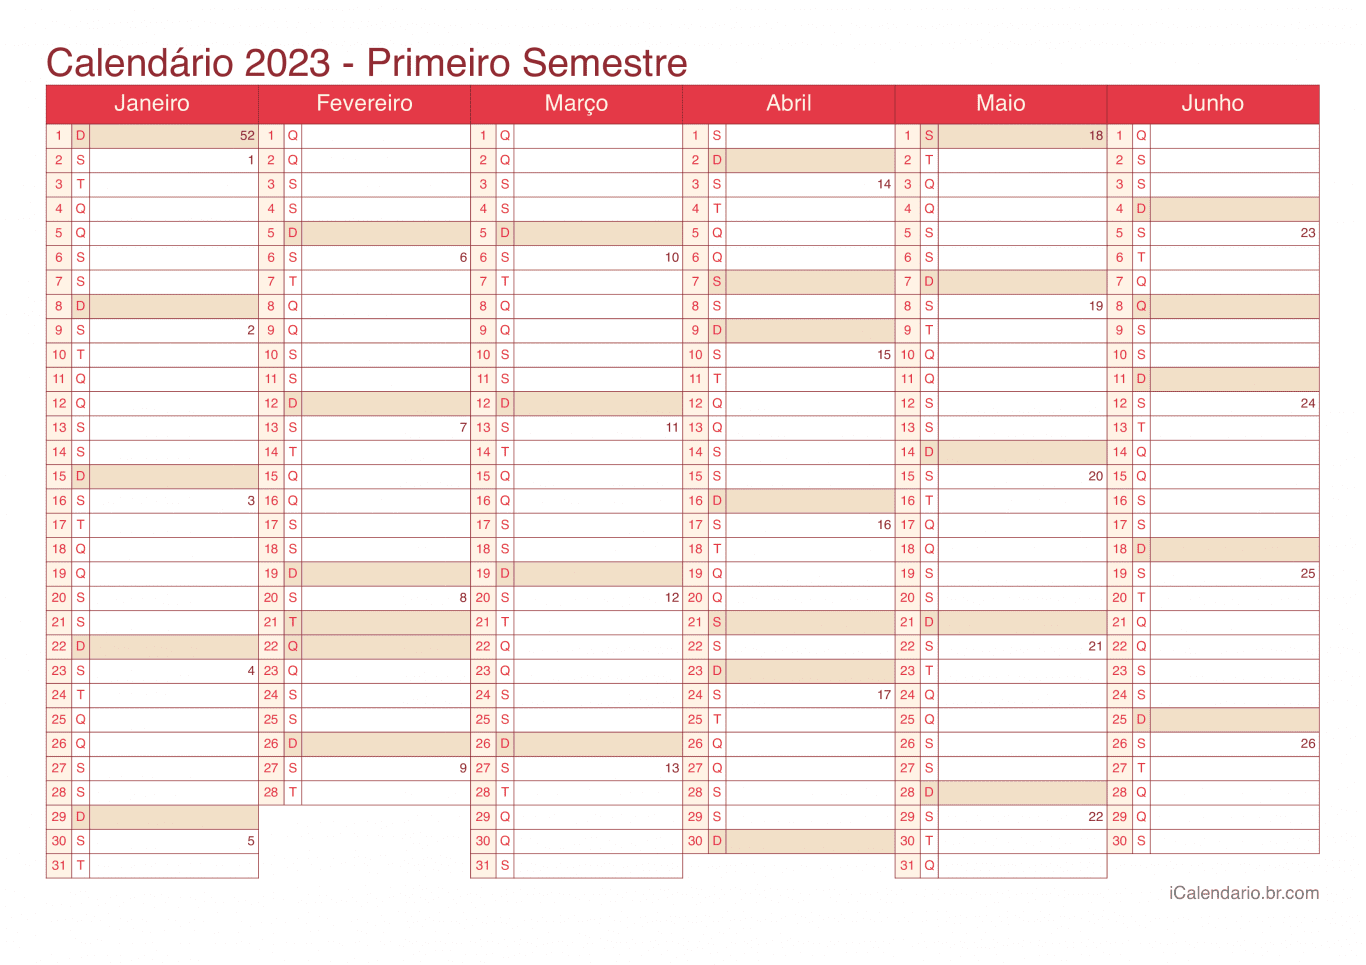 Calendário por semestre com números da semana 2023 - Cherry